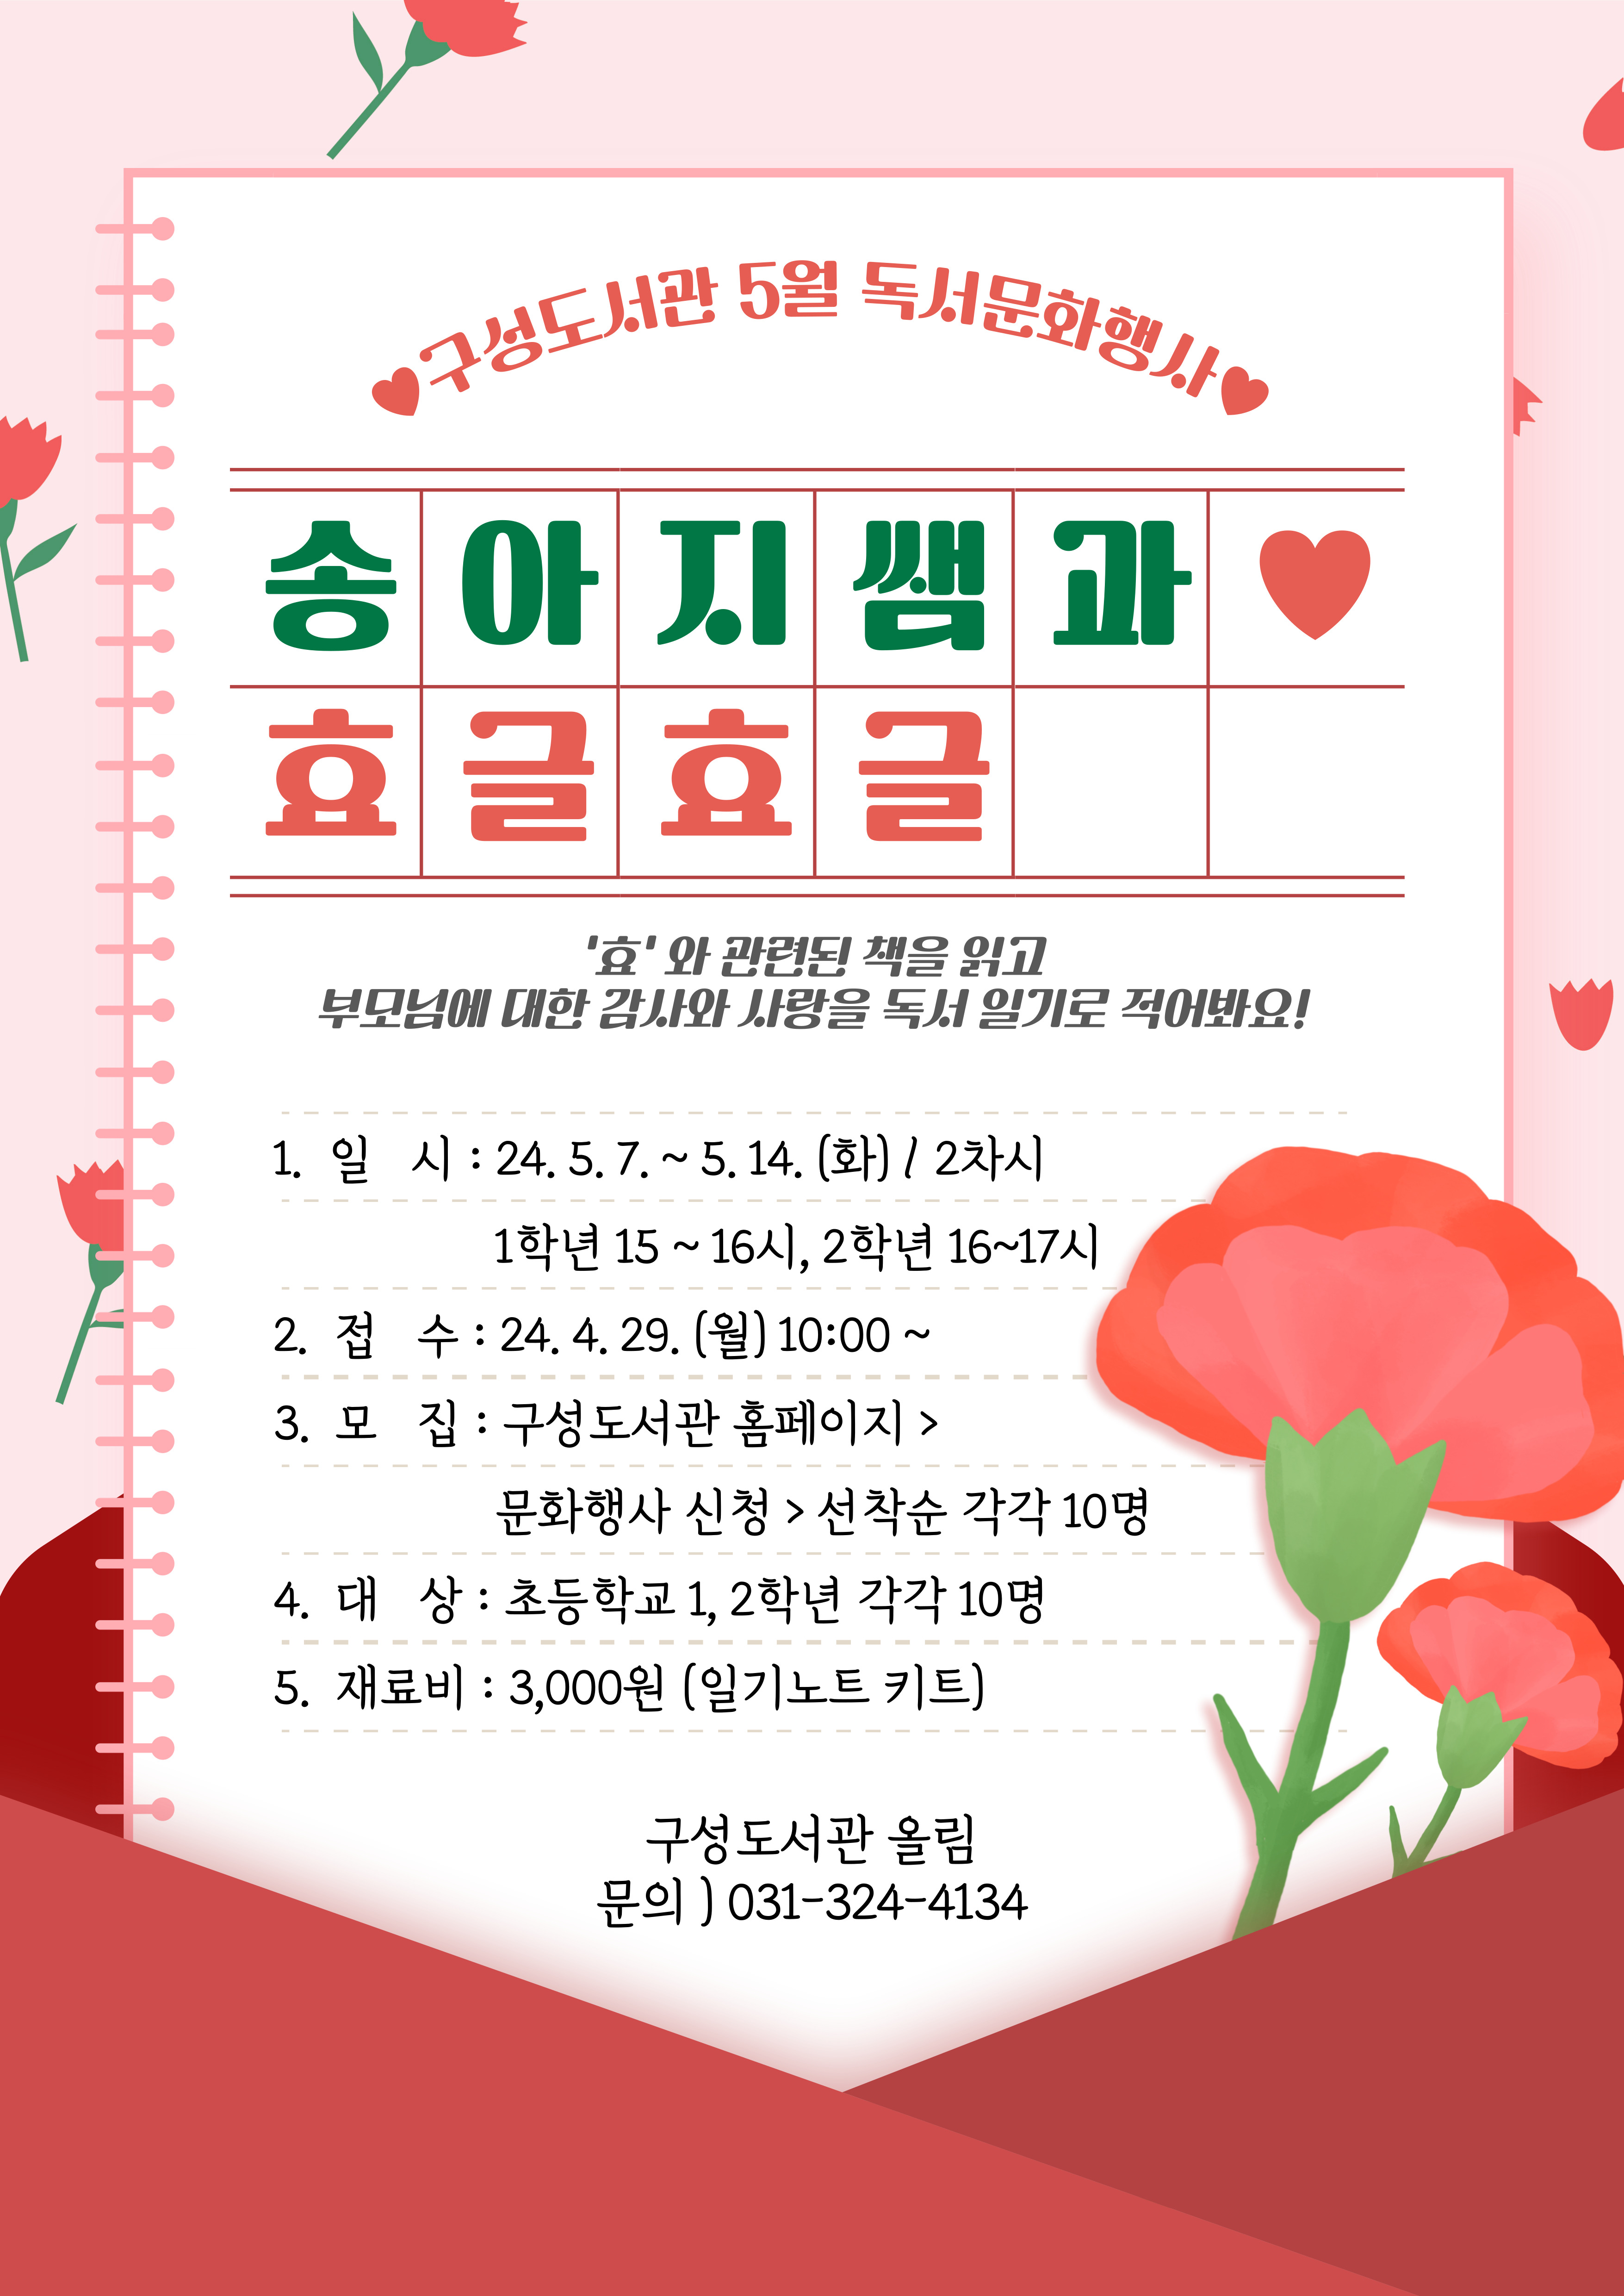 5월 독서문화행사 「'효' 독서일기 쓰기 - 송아지쌤과 효글효글」(2학년)